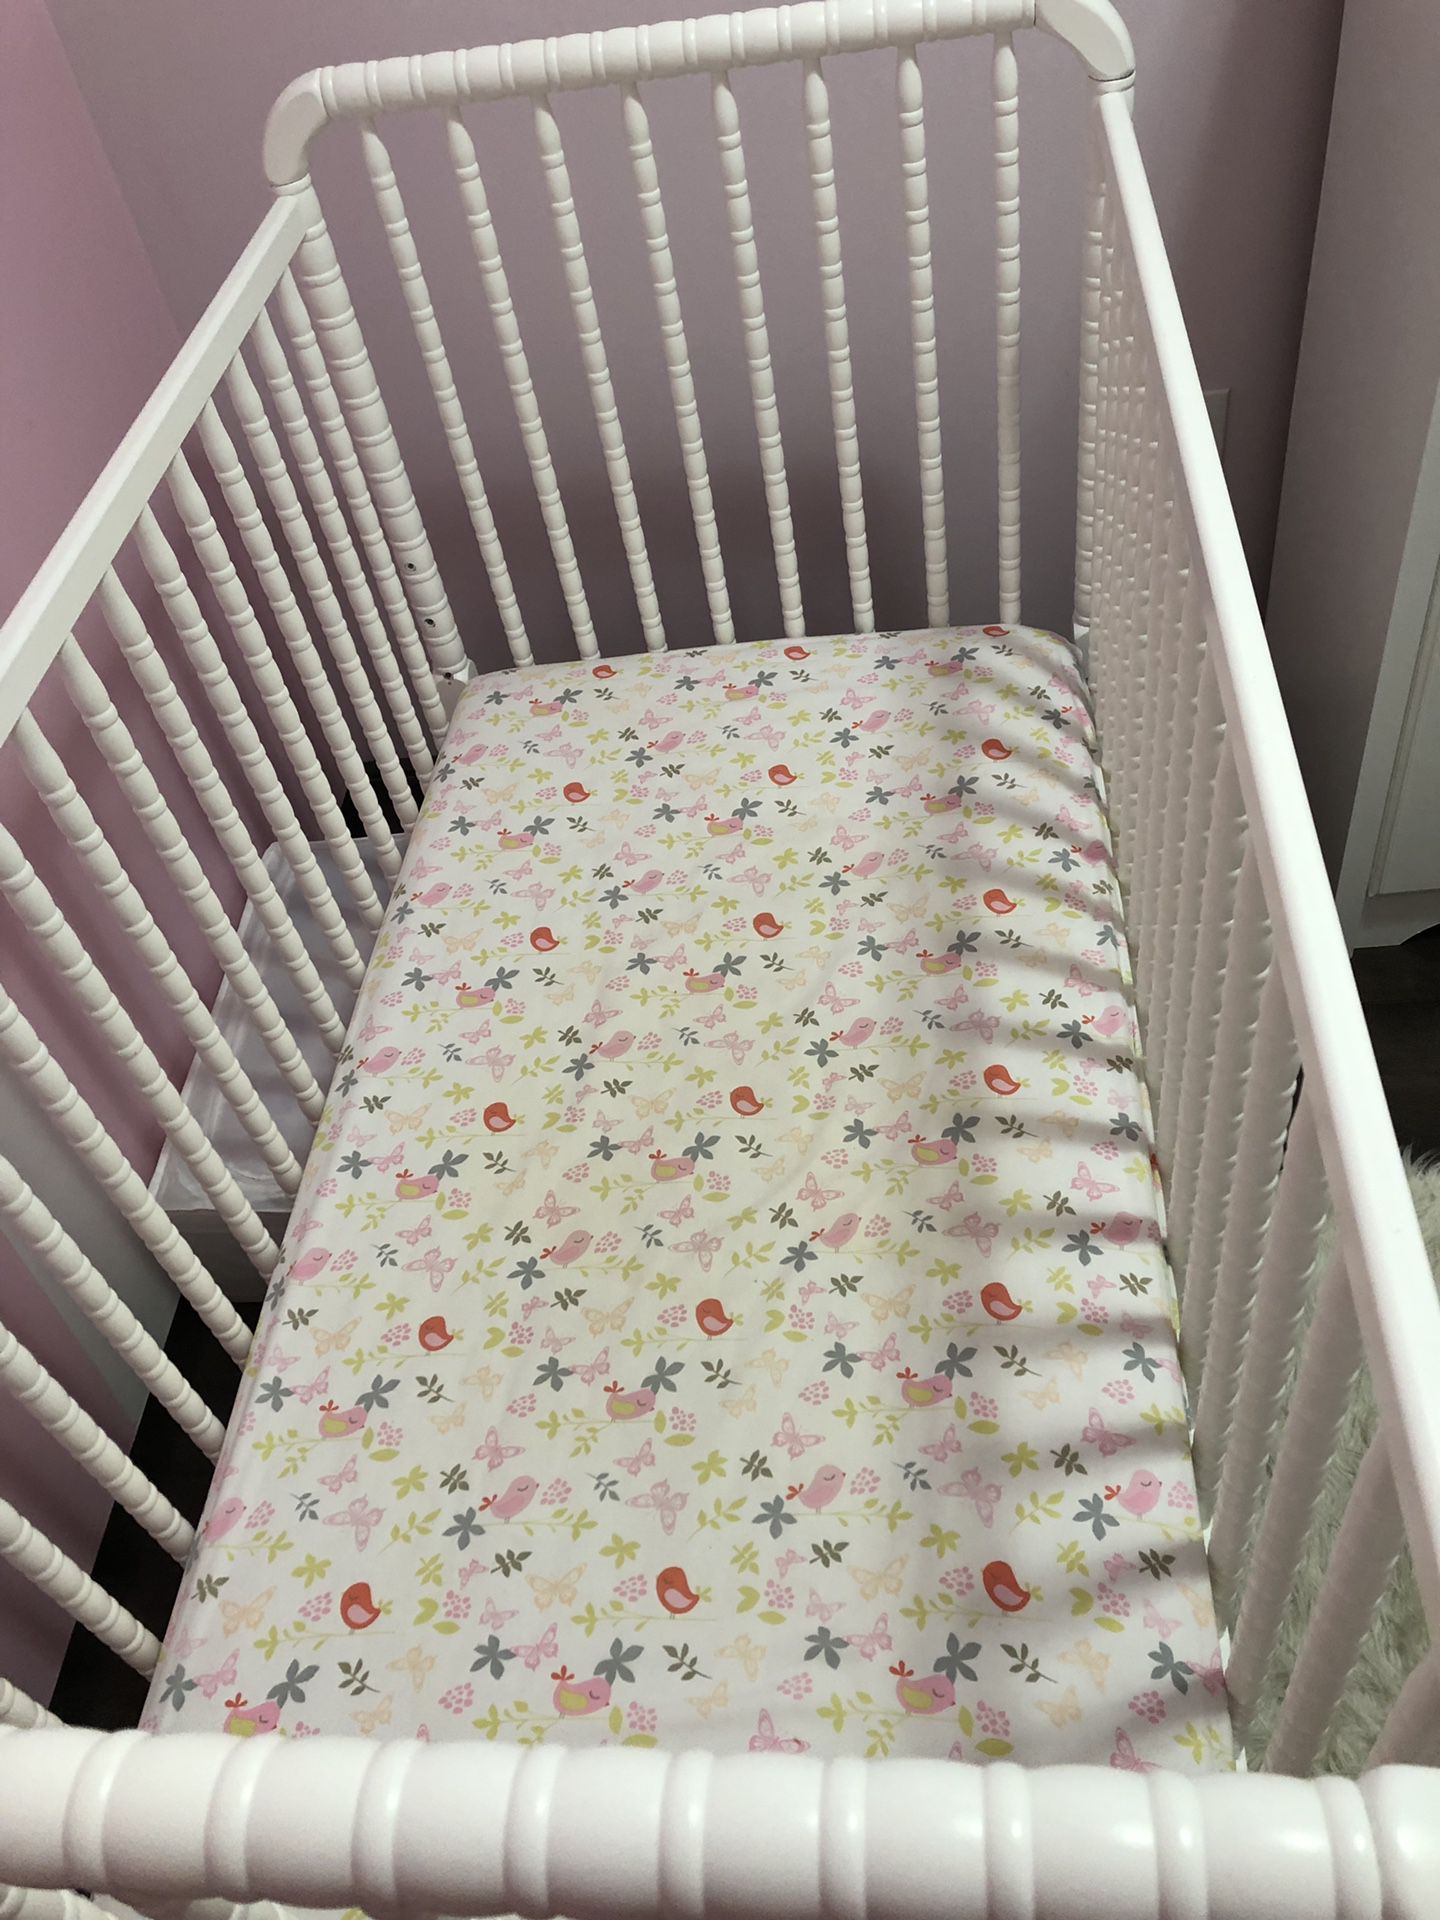 Baby/toddler crib